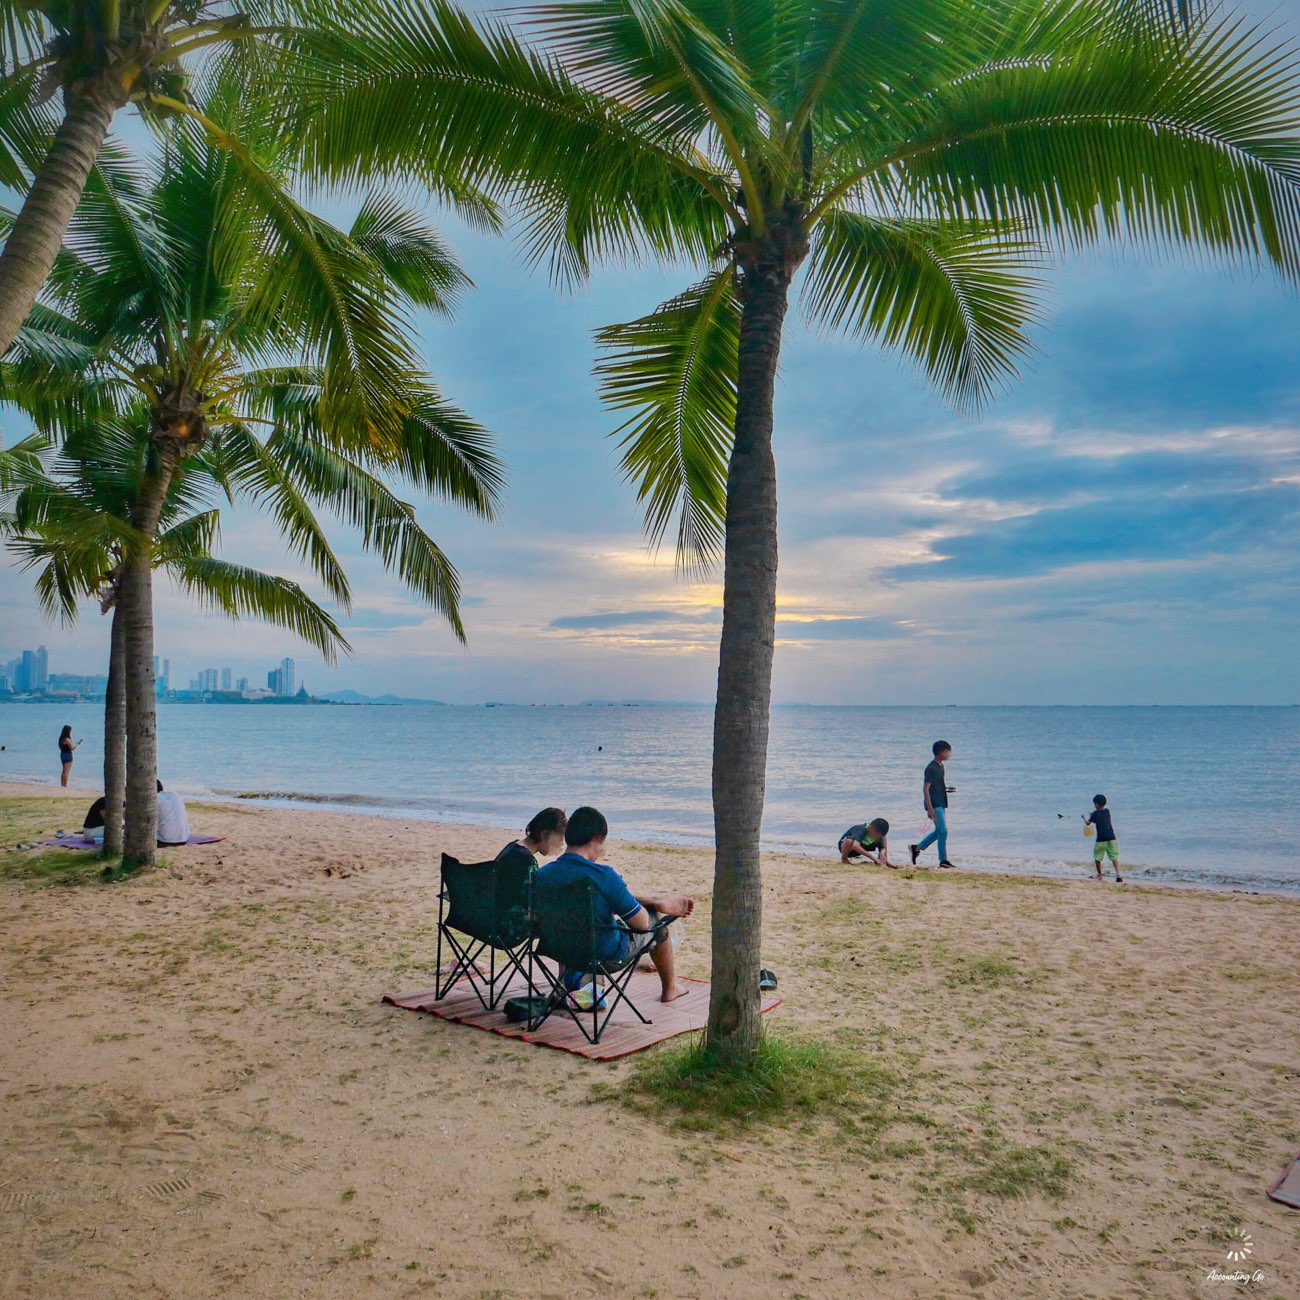 หาดกระทิงลาย” หาดลับพัทยา! นั่งชิล ดูพระอาทิตย์ตก | Trip.com พัทยา